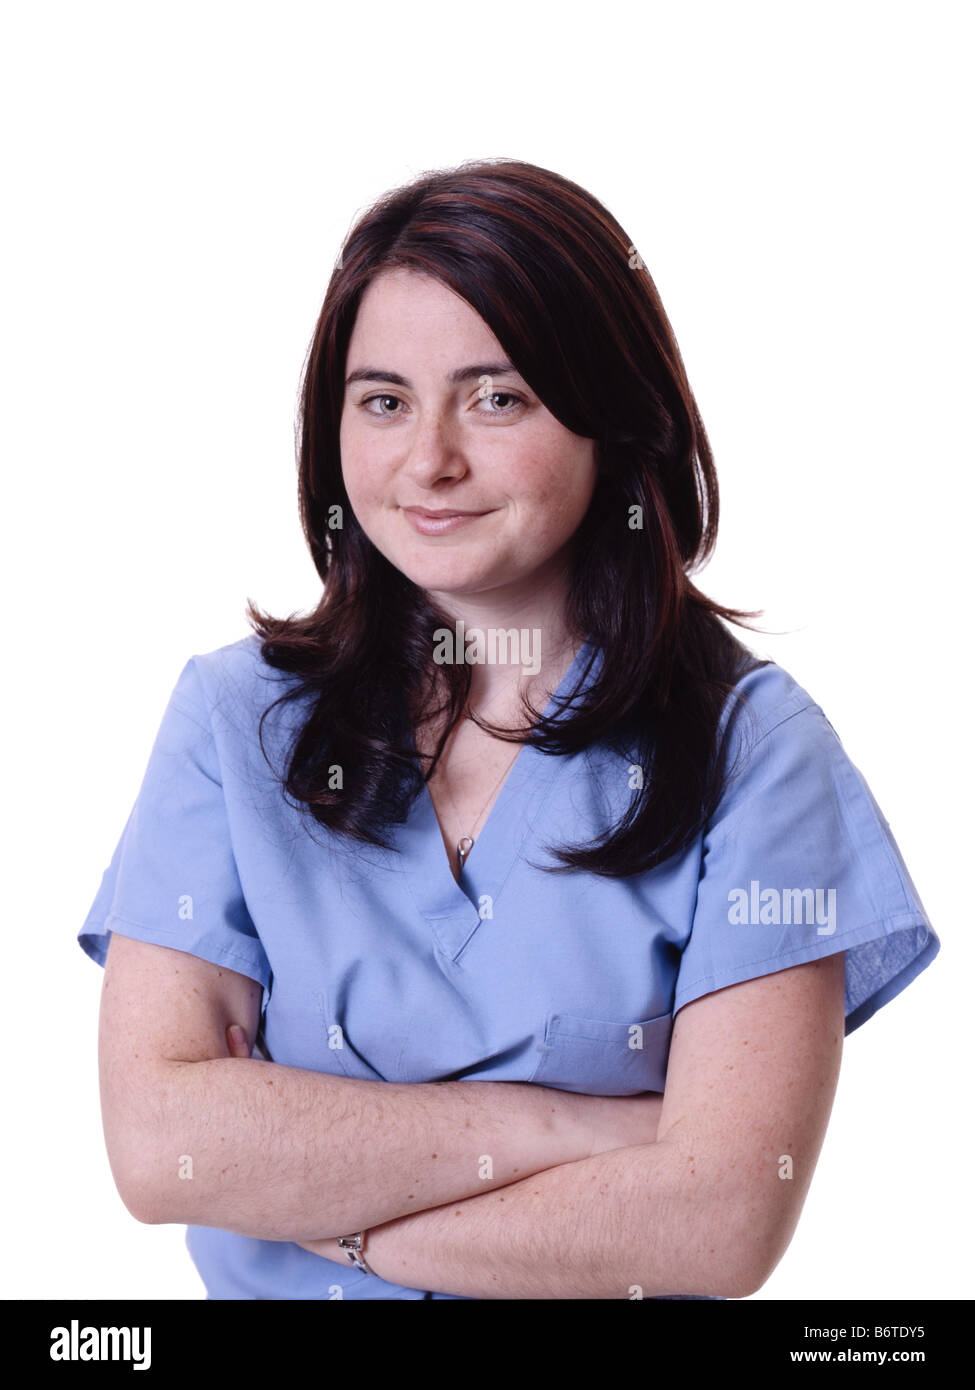 Testa e spalle colpo di Donna sorridente professionista del healthcare in frega contro uno sfondo bianco Foto Stock